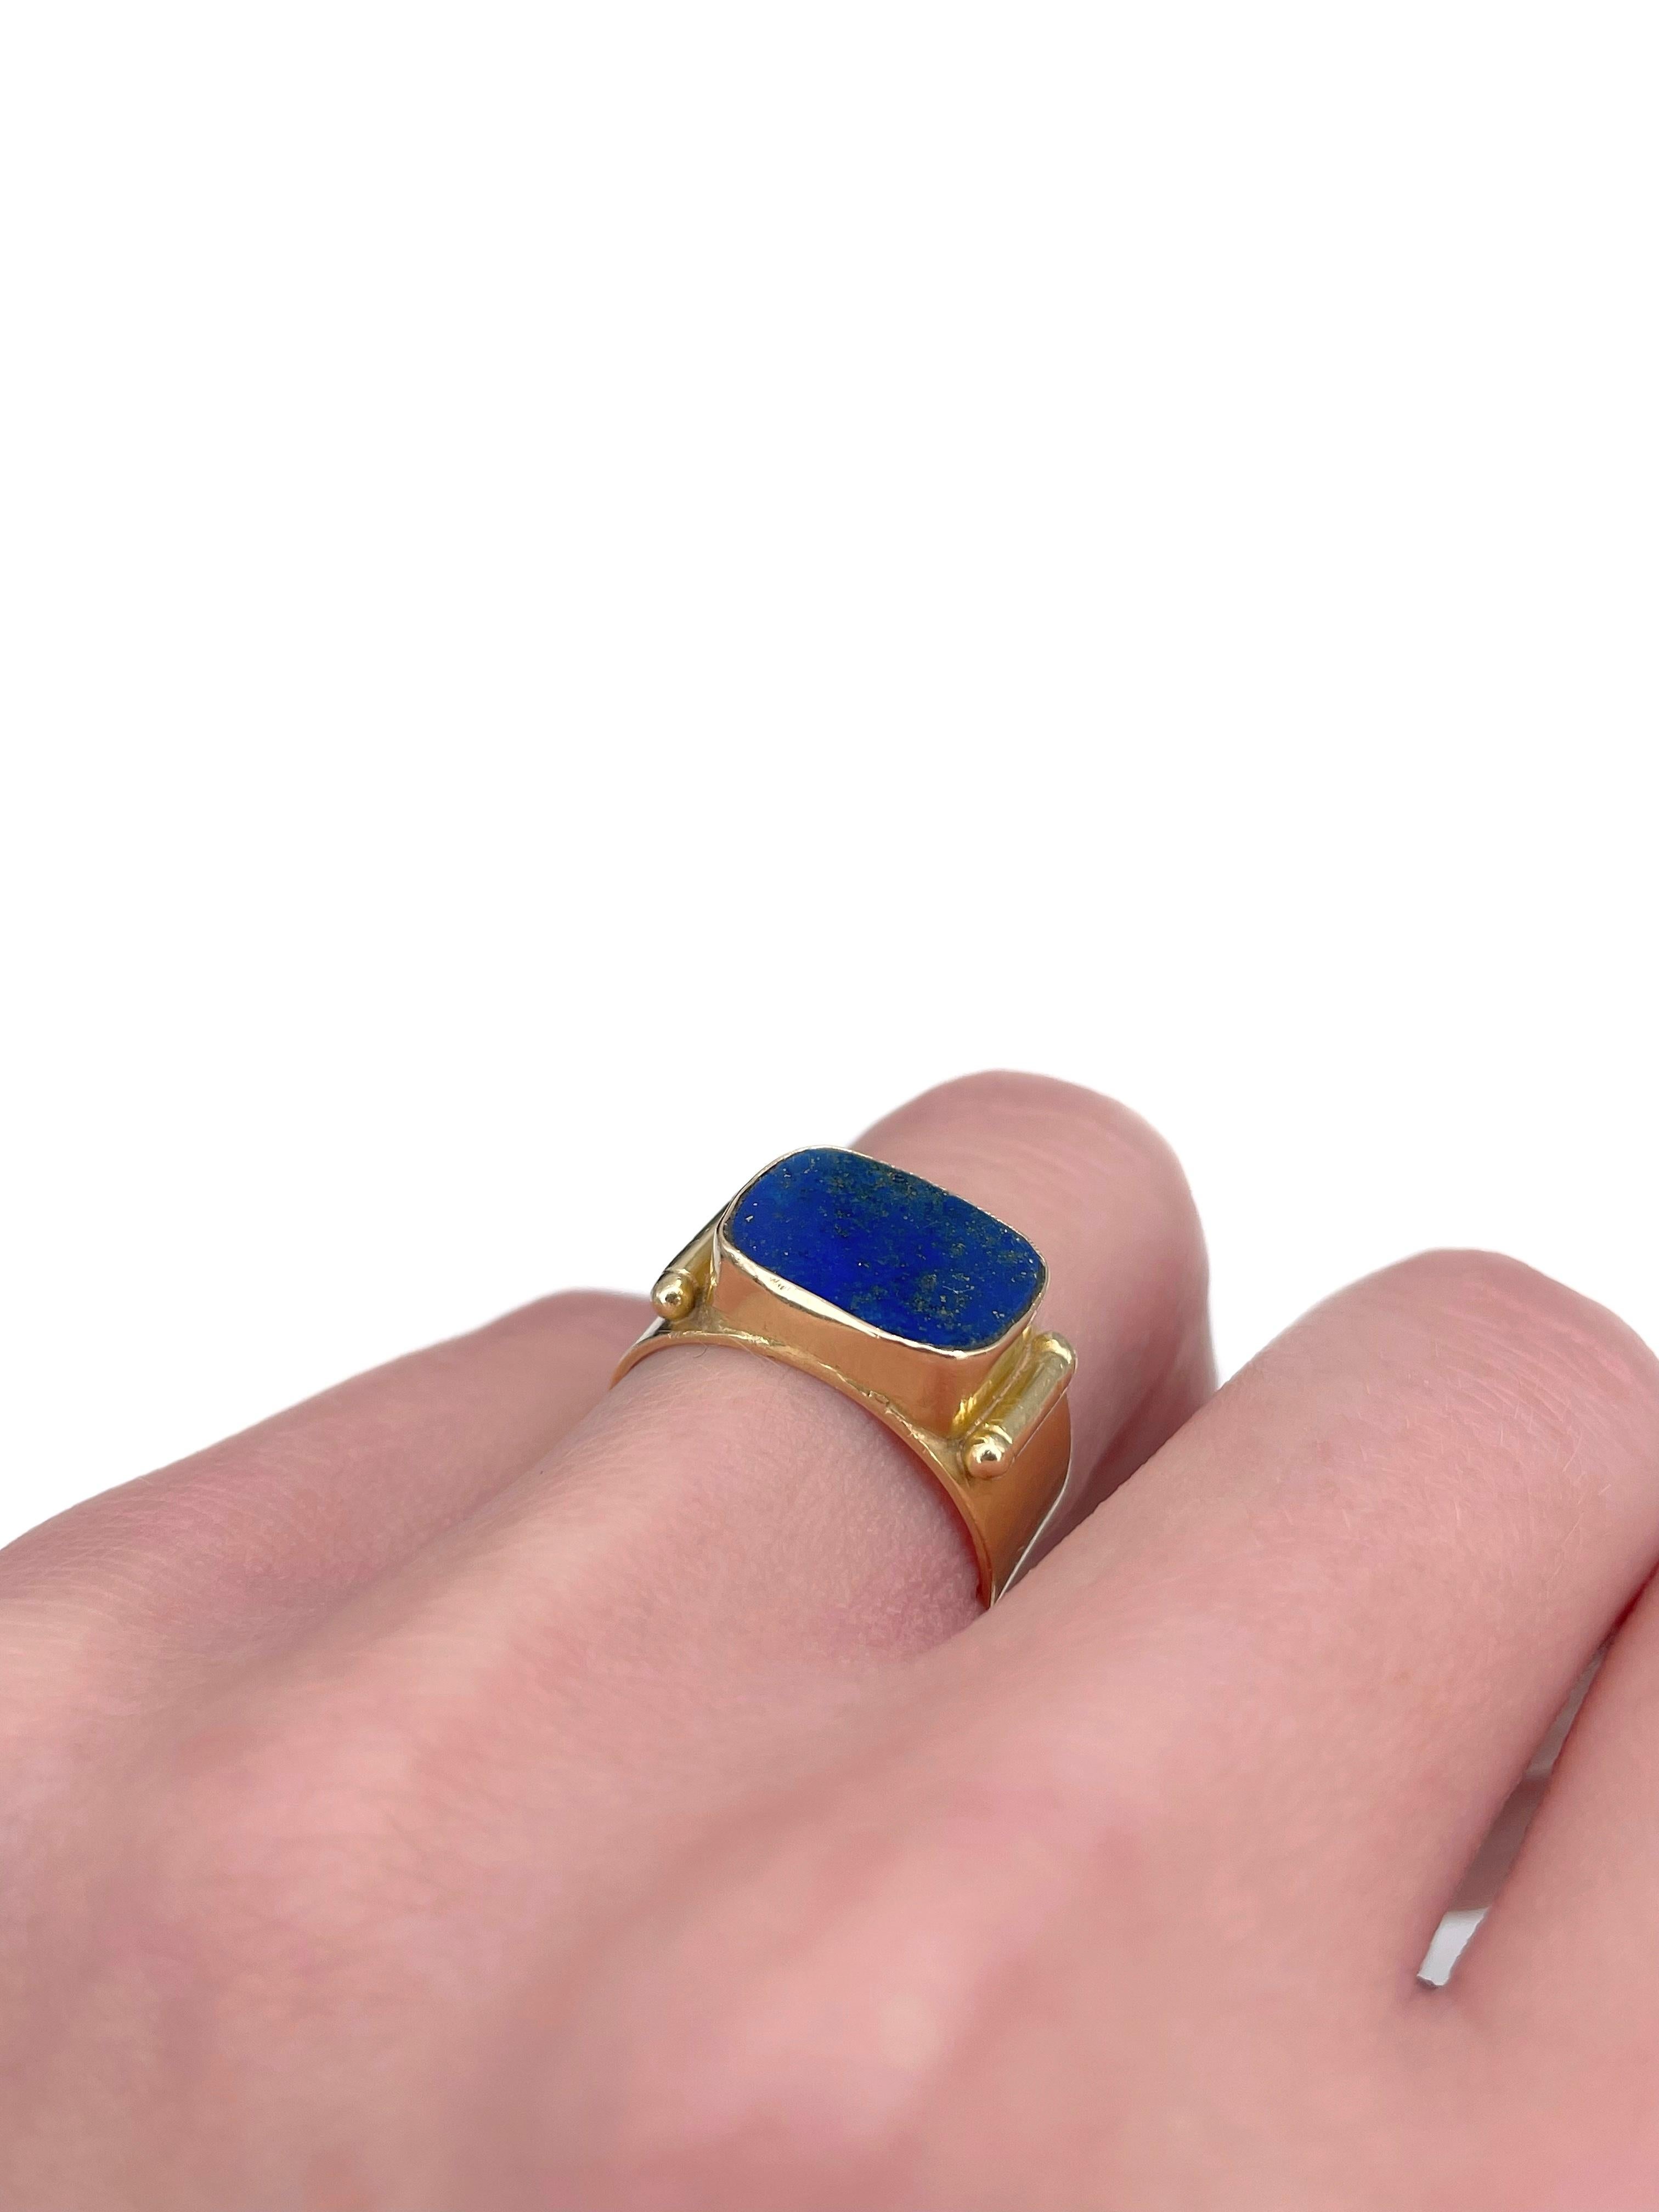 Modern Mid Century 18 Karat Gold Lapis Lazuli Rectangle Signet Ring For Sale